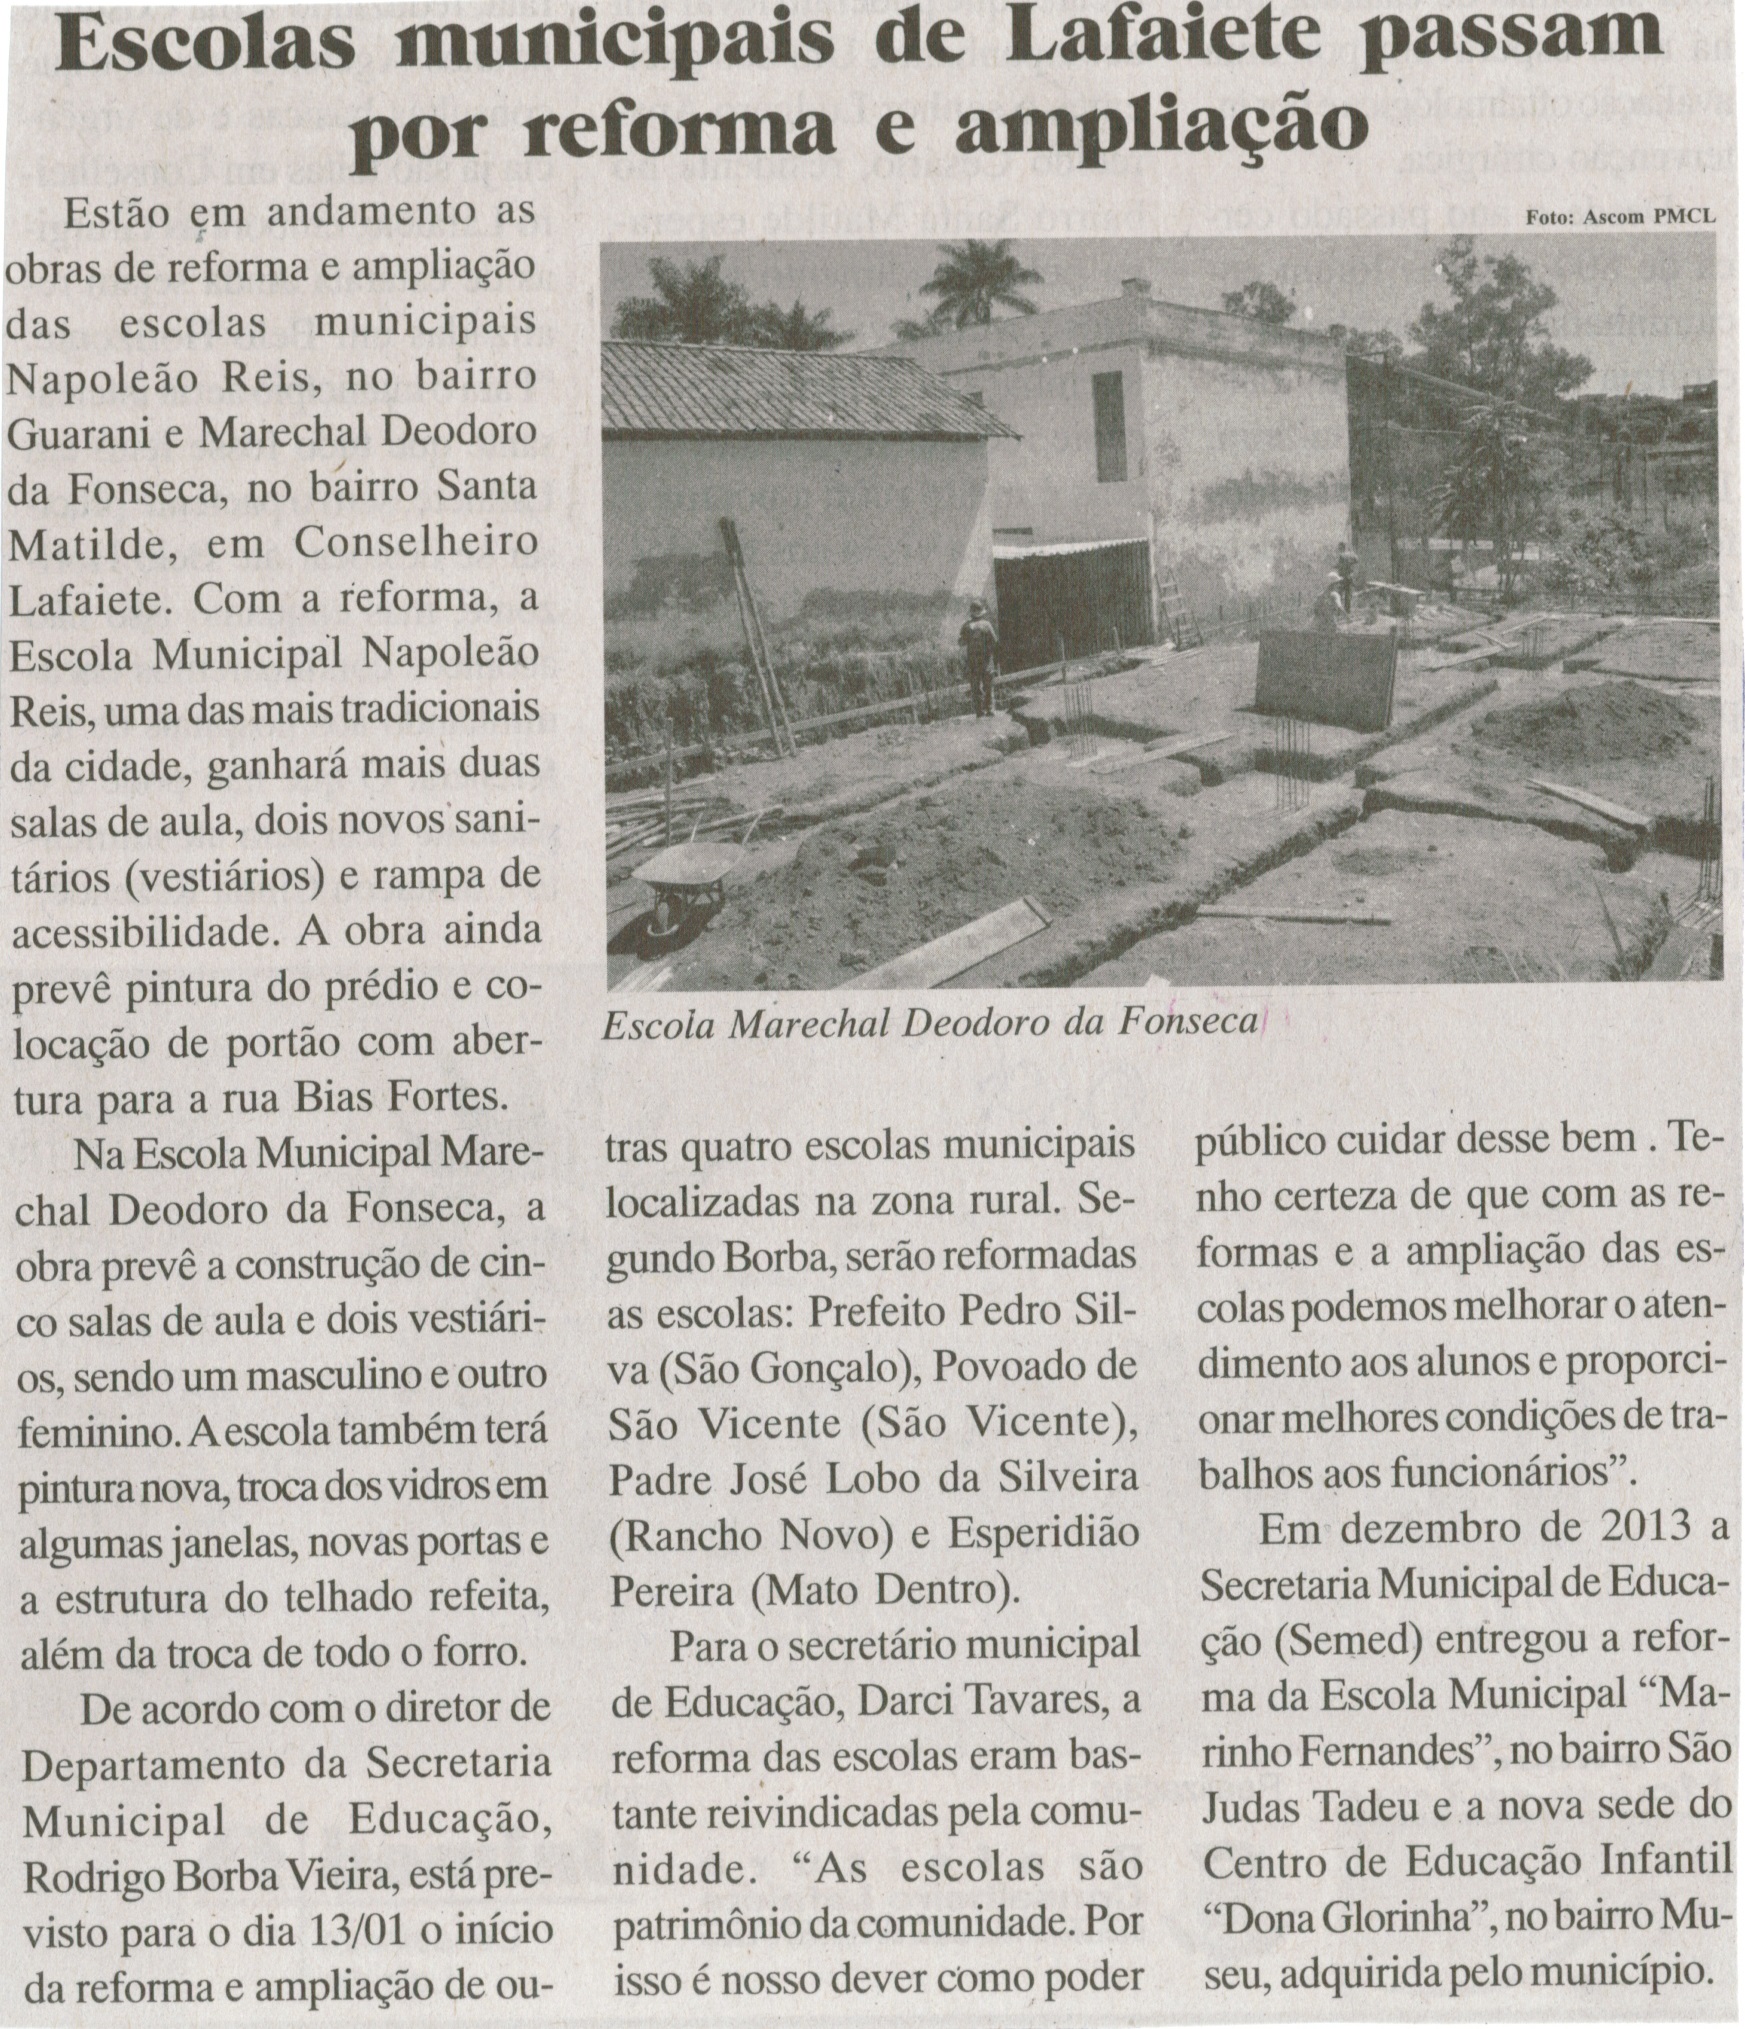 Escolas municipais de Lafaiete passam por reforma e ampliação. Jornal Baruc, Congonhas, 15 jan. 2014, p. 5.